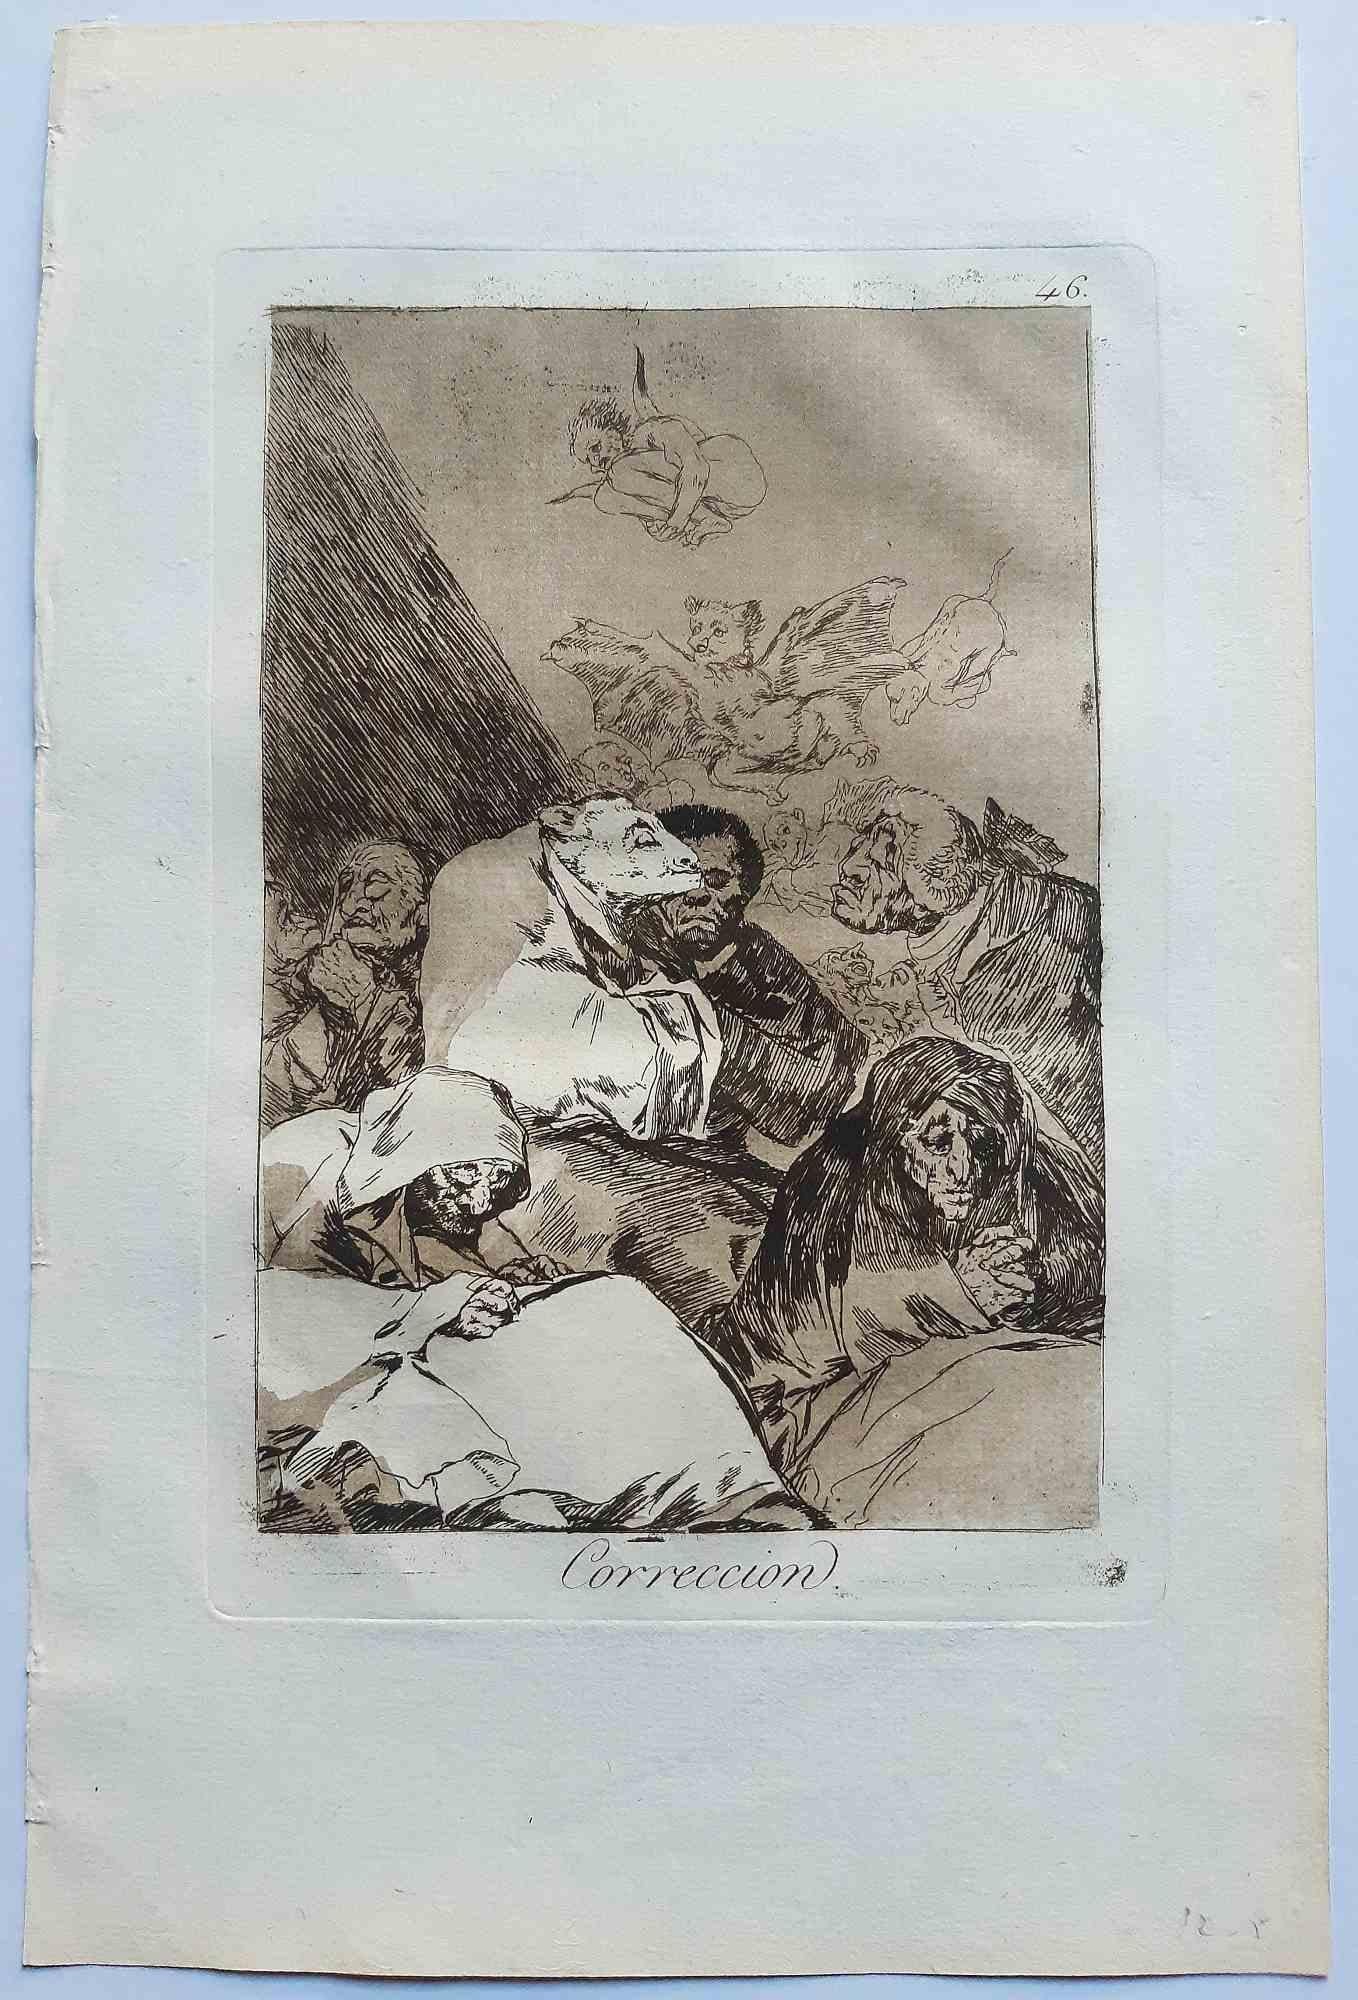 Correcion aus Los Caprichos ist ein originales Kunstwerk des Künstlers Francisco Goya, das 1799 zum ersten Mal veröffentlicht wurde.

Radierung und Aquatinta auf Papier.

Die Radierung ist Teil der Erstausgabe von "Los Caprichos", die 1799 von der